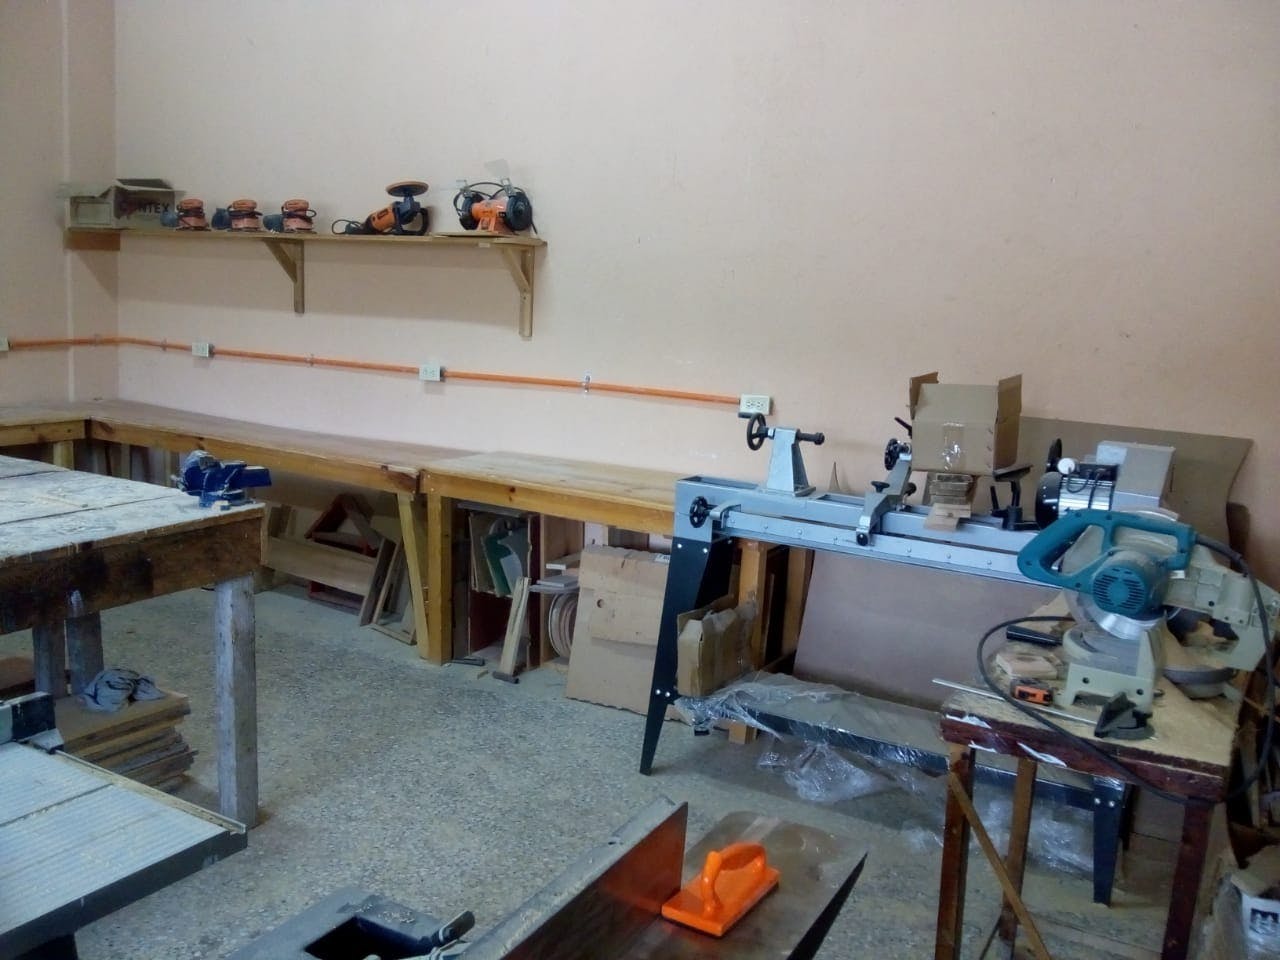 Completion of carpentry workshop